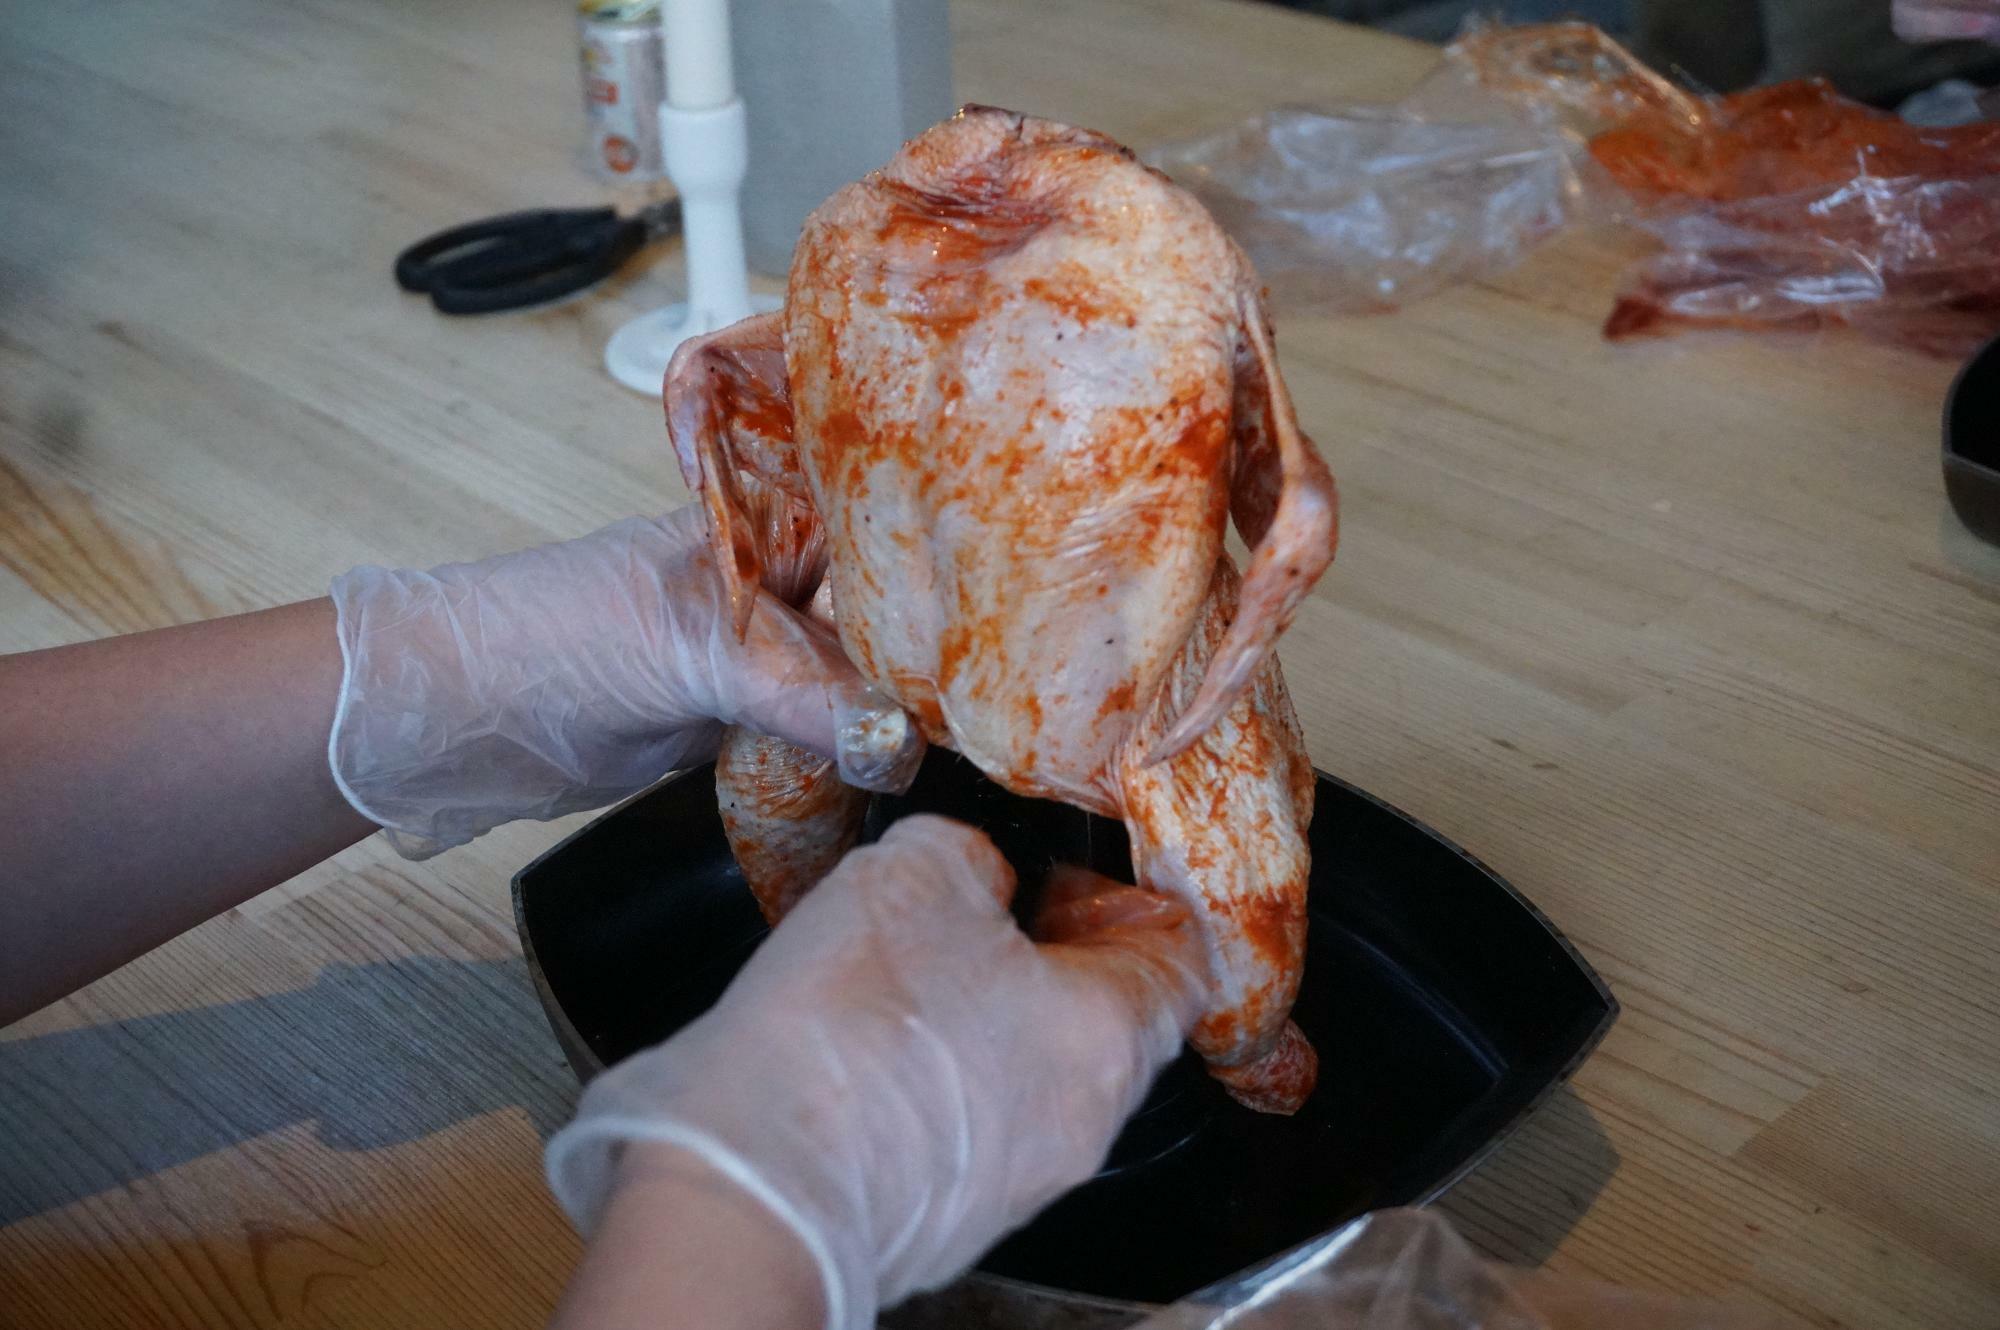 （C）Shie Iwasa　お食事セットは鶏肉を丸ごと1羽。ギアを使い、自分で調理することが前提のワイルドな設定。一人前のメニューはないものの、このオリジナル丸鶏は食べてみたい！